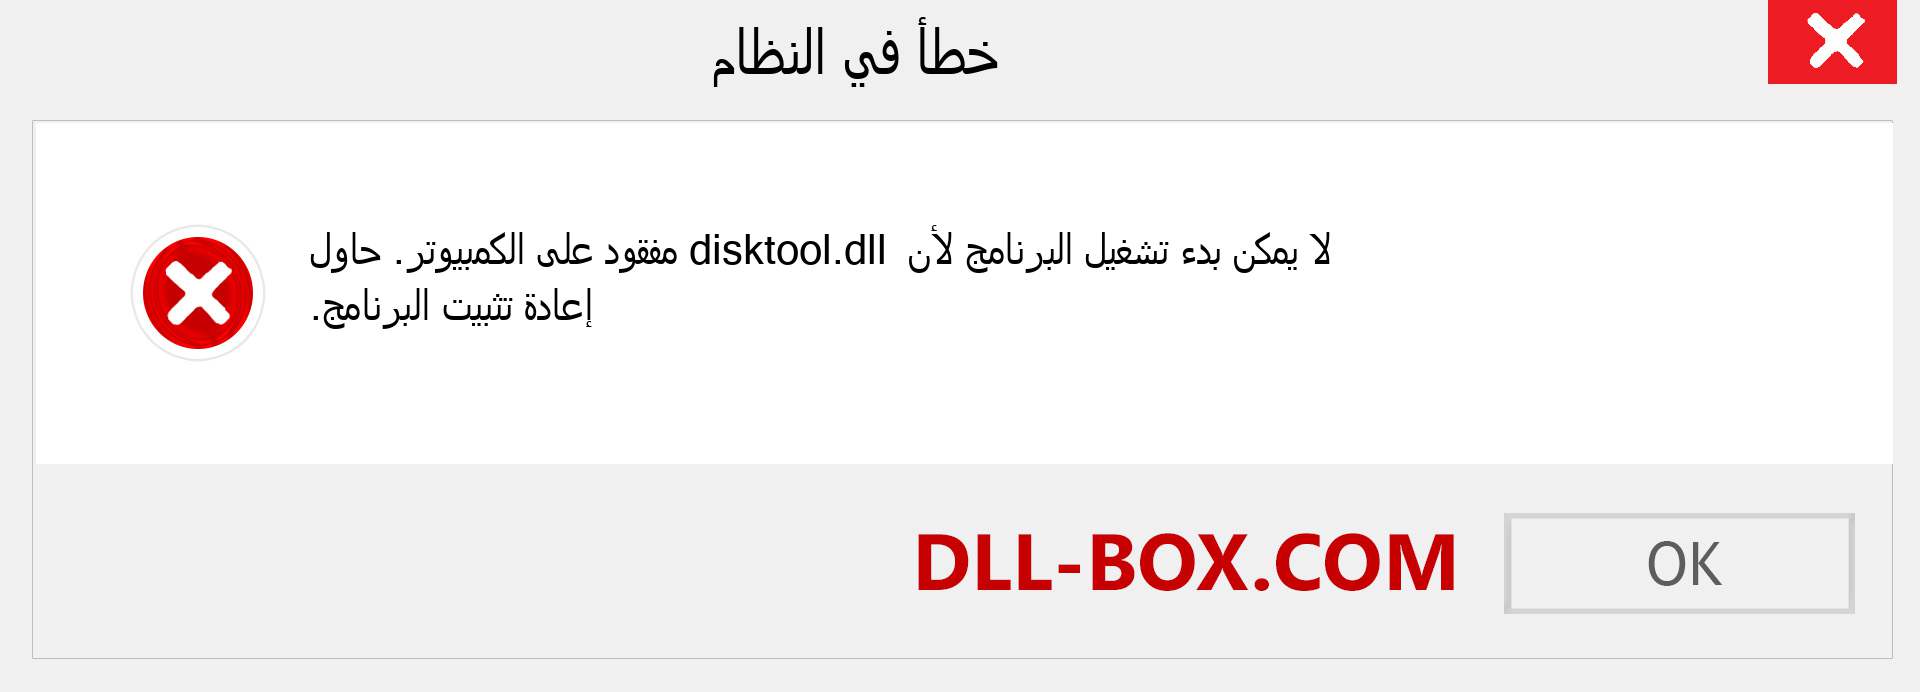 ملف disktool.dll مفقود ؟. التنزيل لنظام التشغيل Windows 7 و 8 و 10 - إصلاح خطأ disktool dll المفقود على Windows والصور والصور